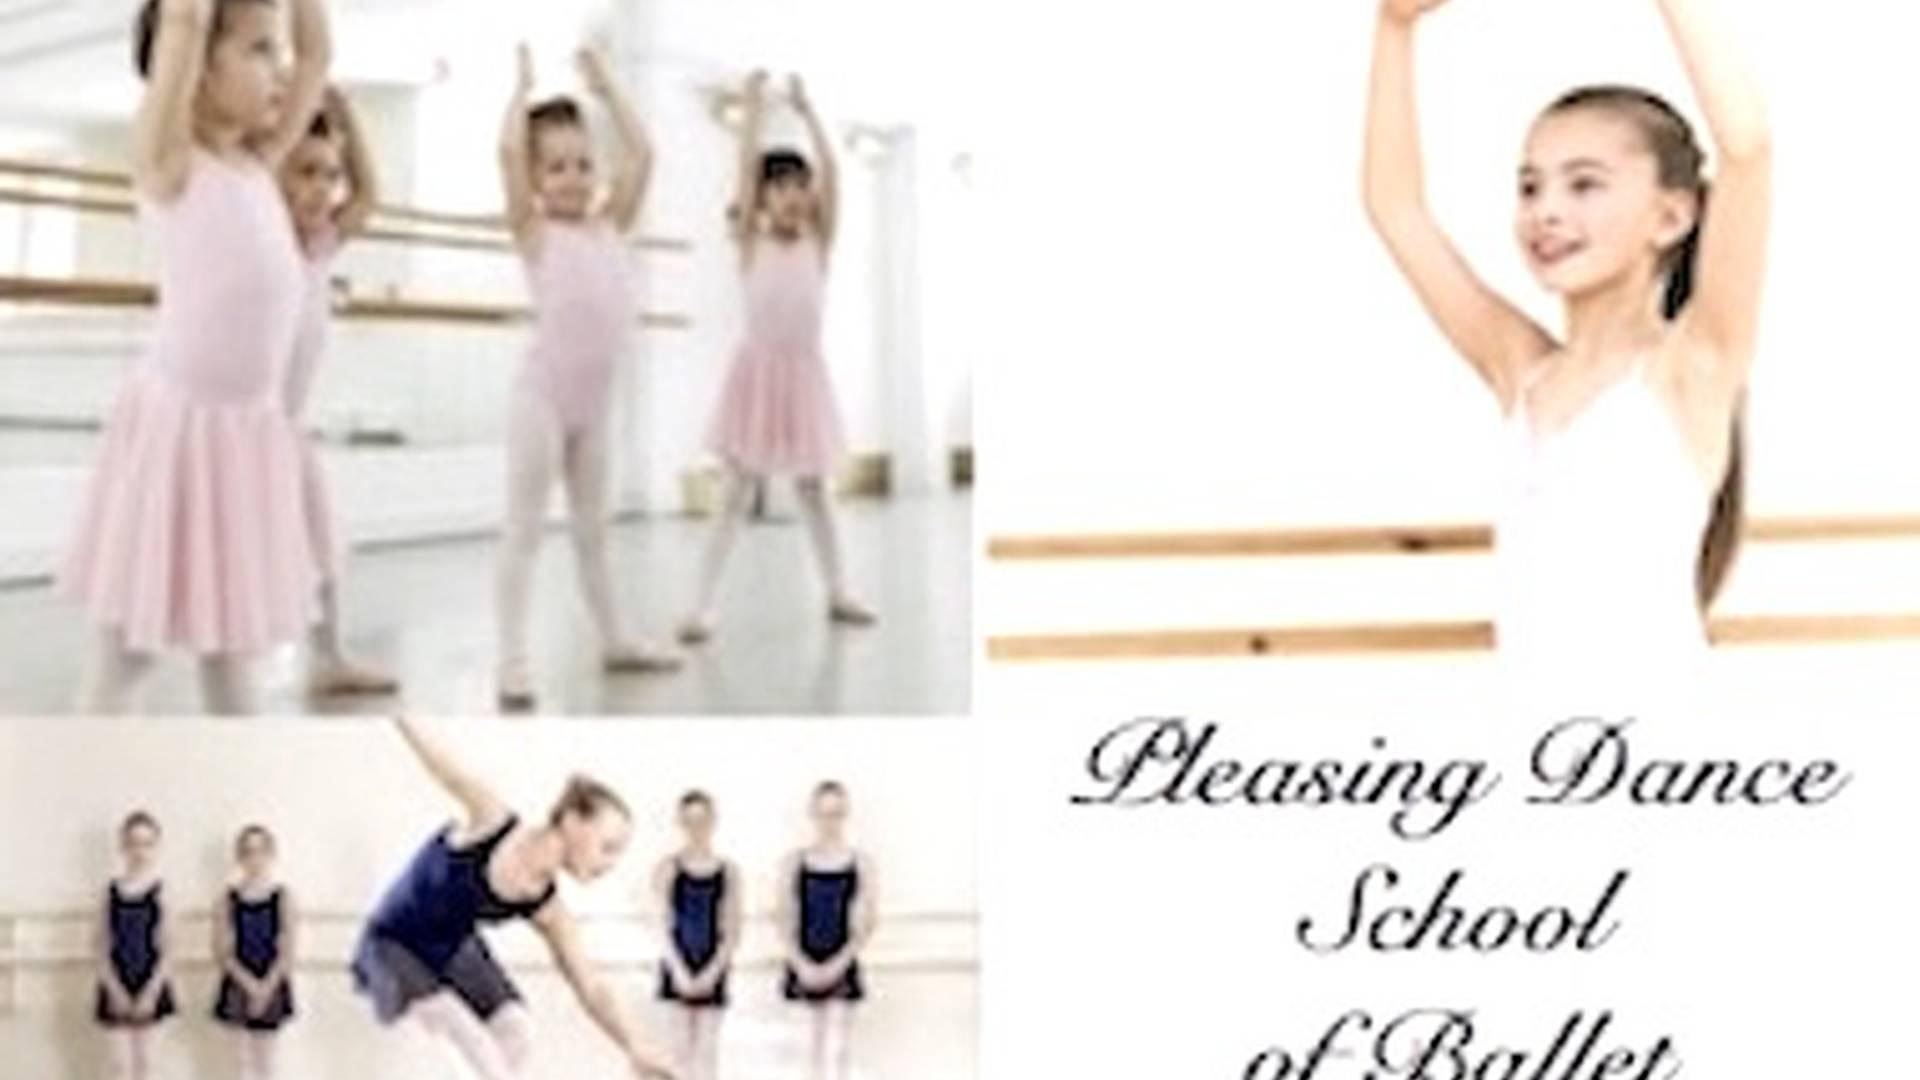 Pleasing Dance School of Ballet photo